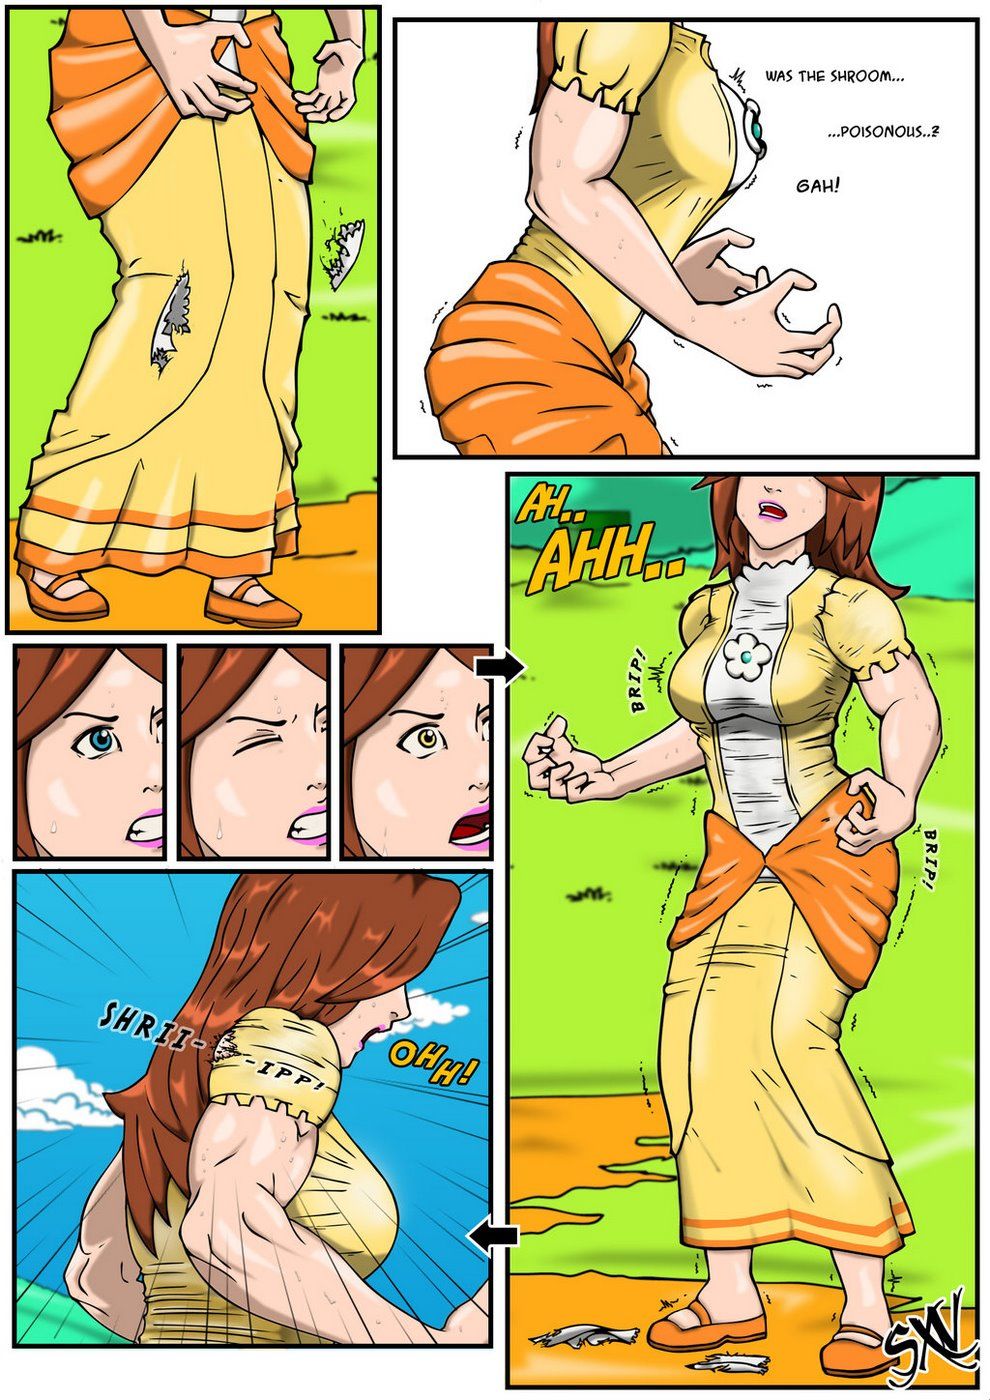 [SHrrrrrriiipfan] Oh, Daisy! page 3